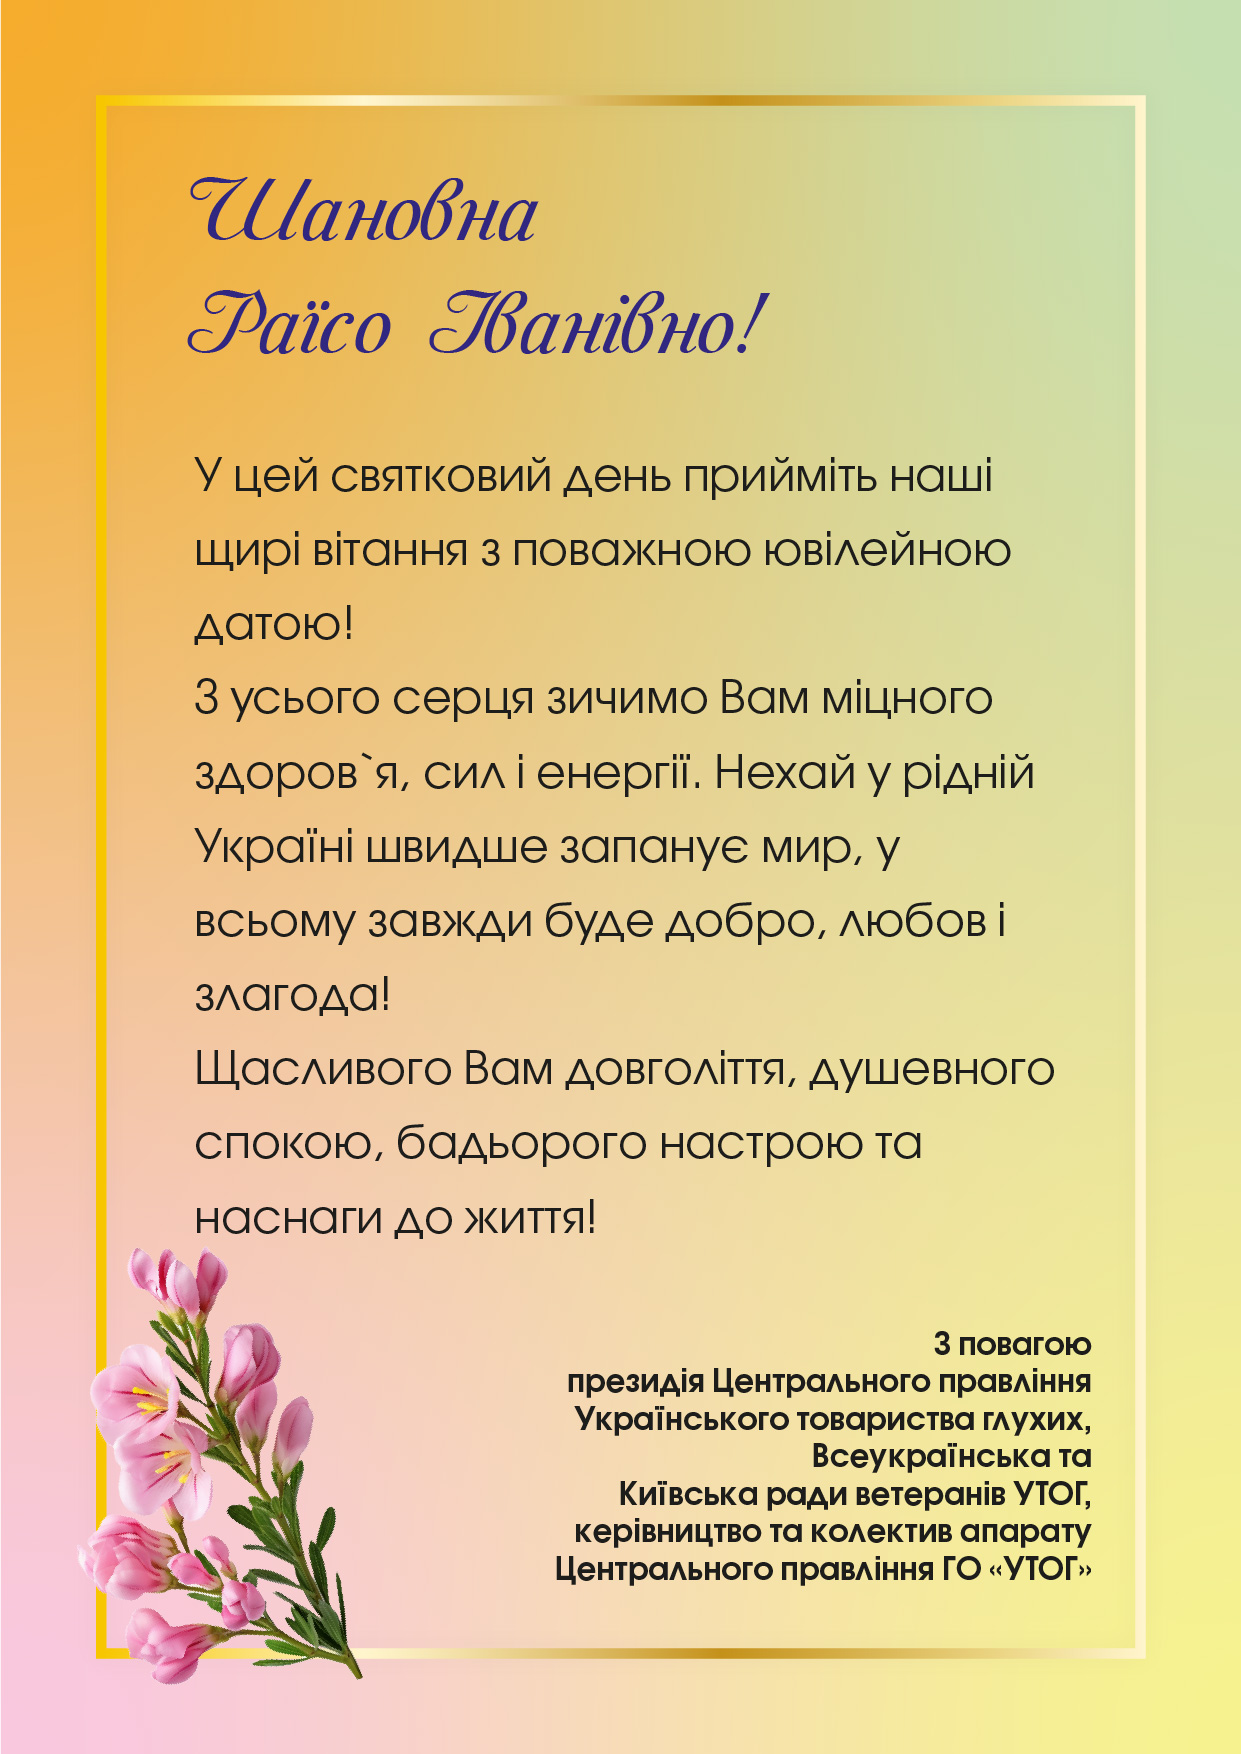 У цей святковий день прийміть наші щирі вітання з поважною ювілейною датою! 
З усього серця зичимо Вам міцного здоров`я, сил і енергії. Нехай у рідній Україні швидше запанує мир, у всьому завжди буде добро, любов і злагода! 
Щасливого Вам довголіття, душевного спокою, бадьорого настрою та наснаги до життя!
З повагою президія Центрального правління Українського товариства глухих, Всеукраїнська та Київська ради ветеранів УТОГ, керівництво та колектив апарату Центрального правління ГО «УТОГ»